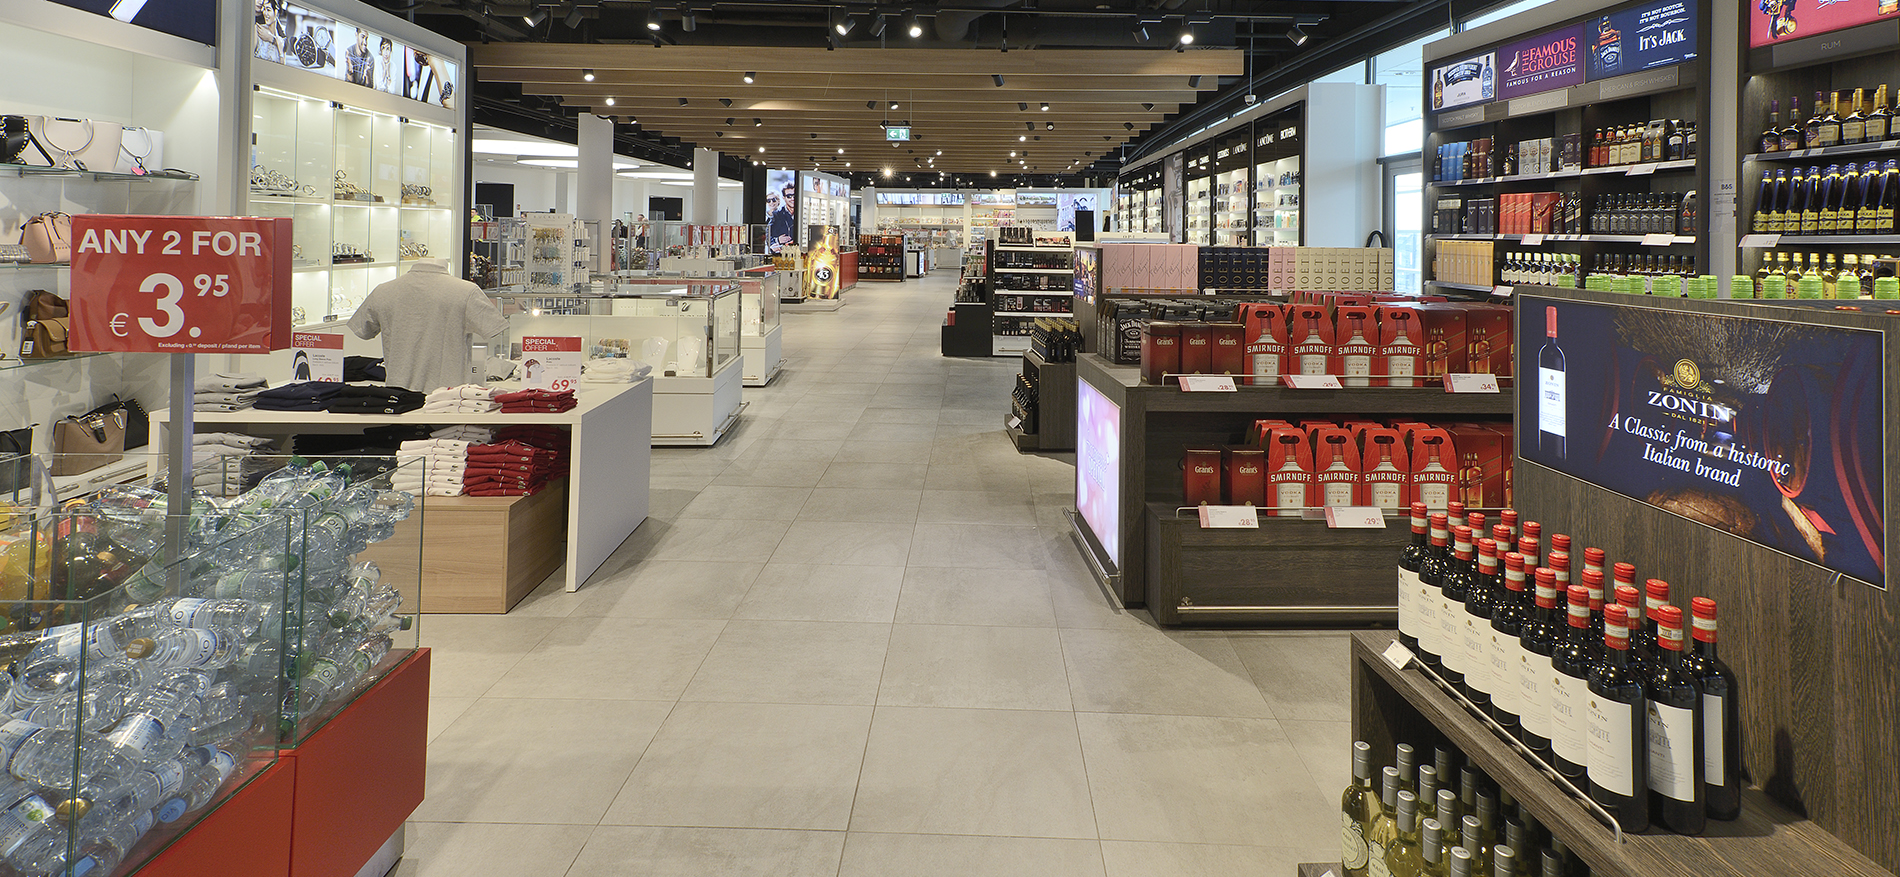 Shop&Fly Luchthaven | Bremen (DE) - Retail design